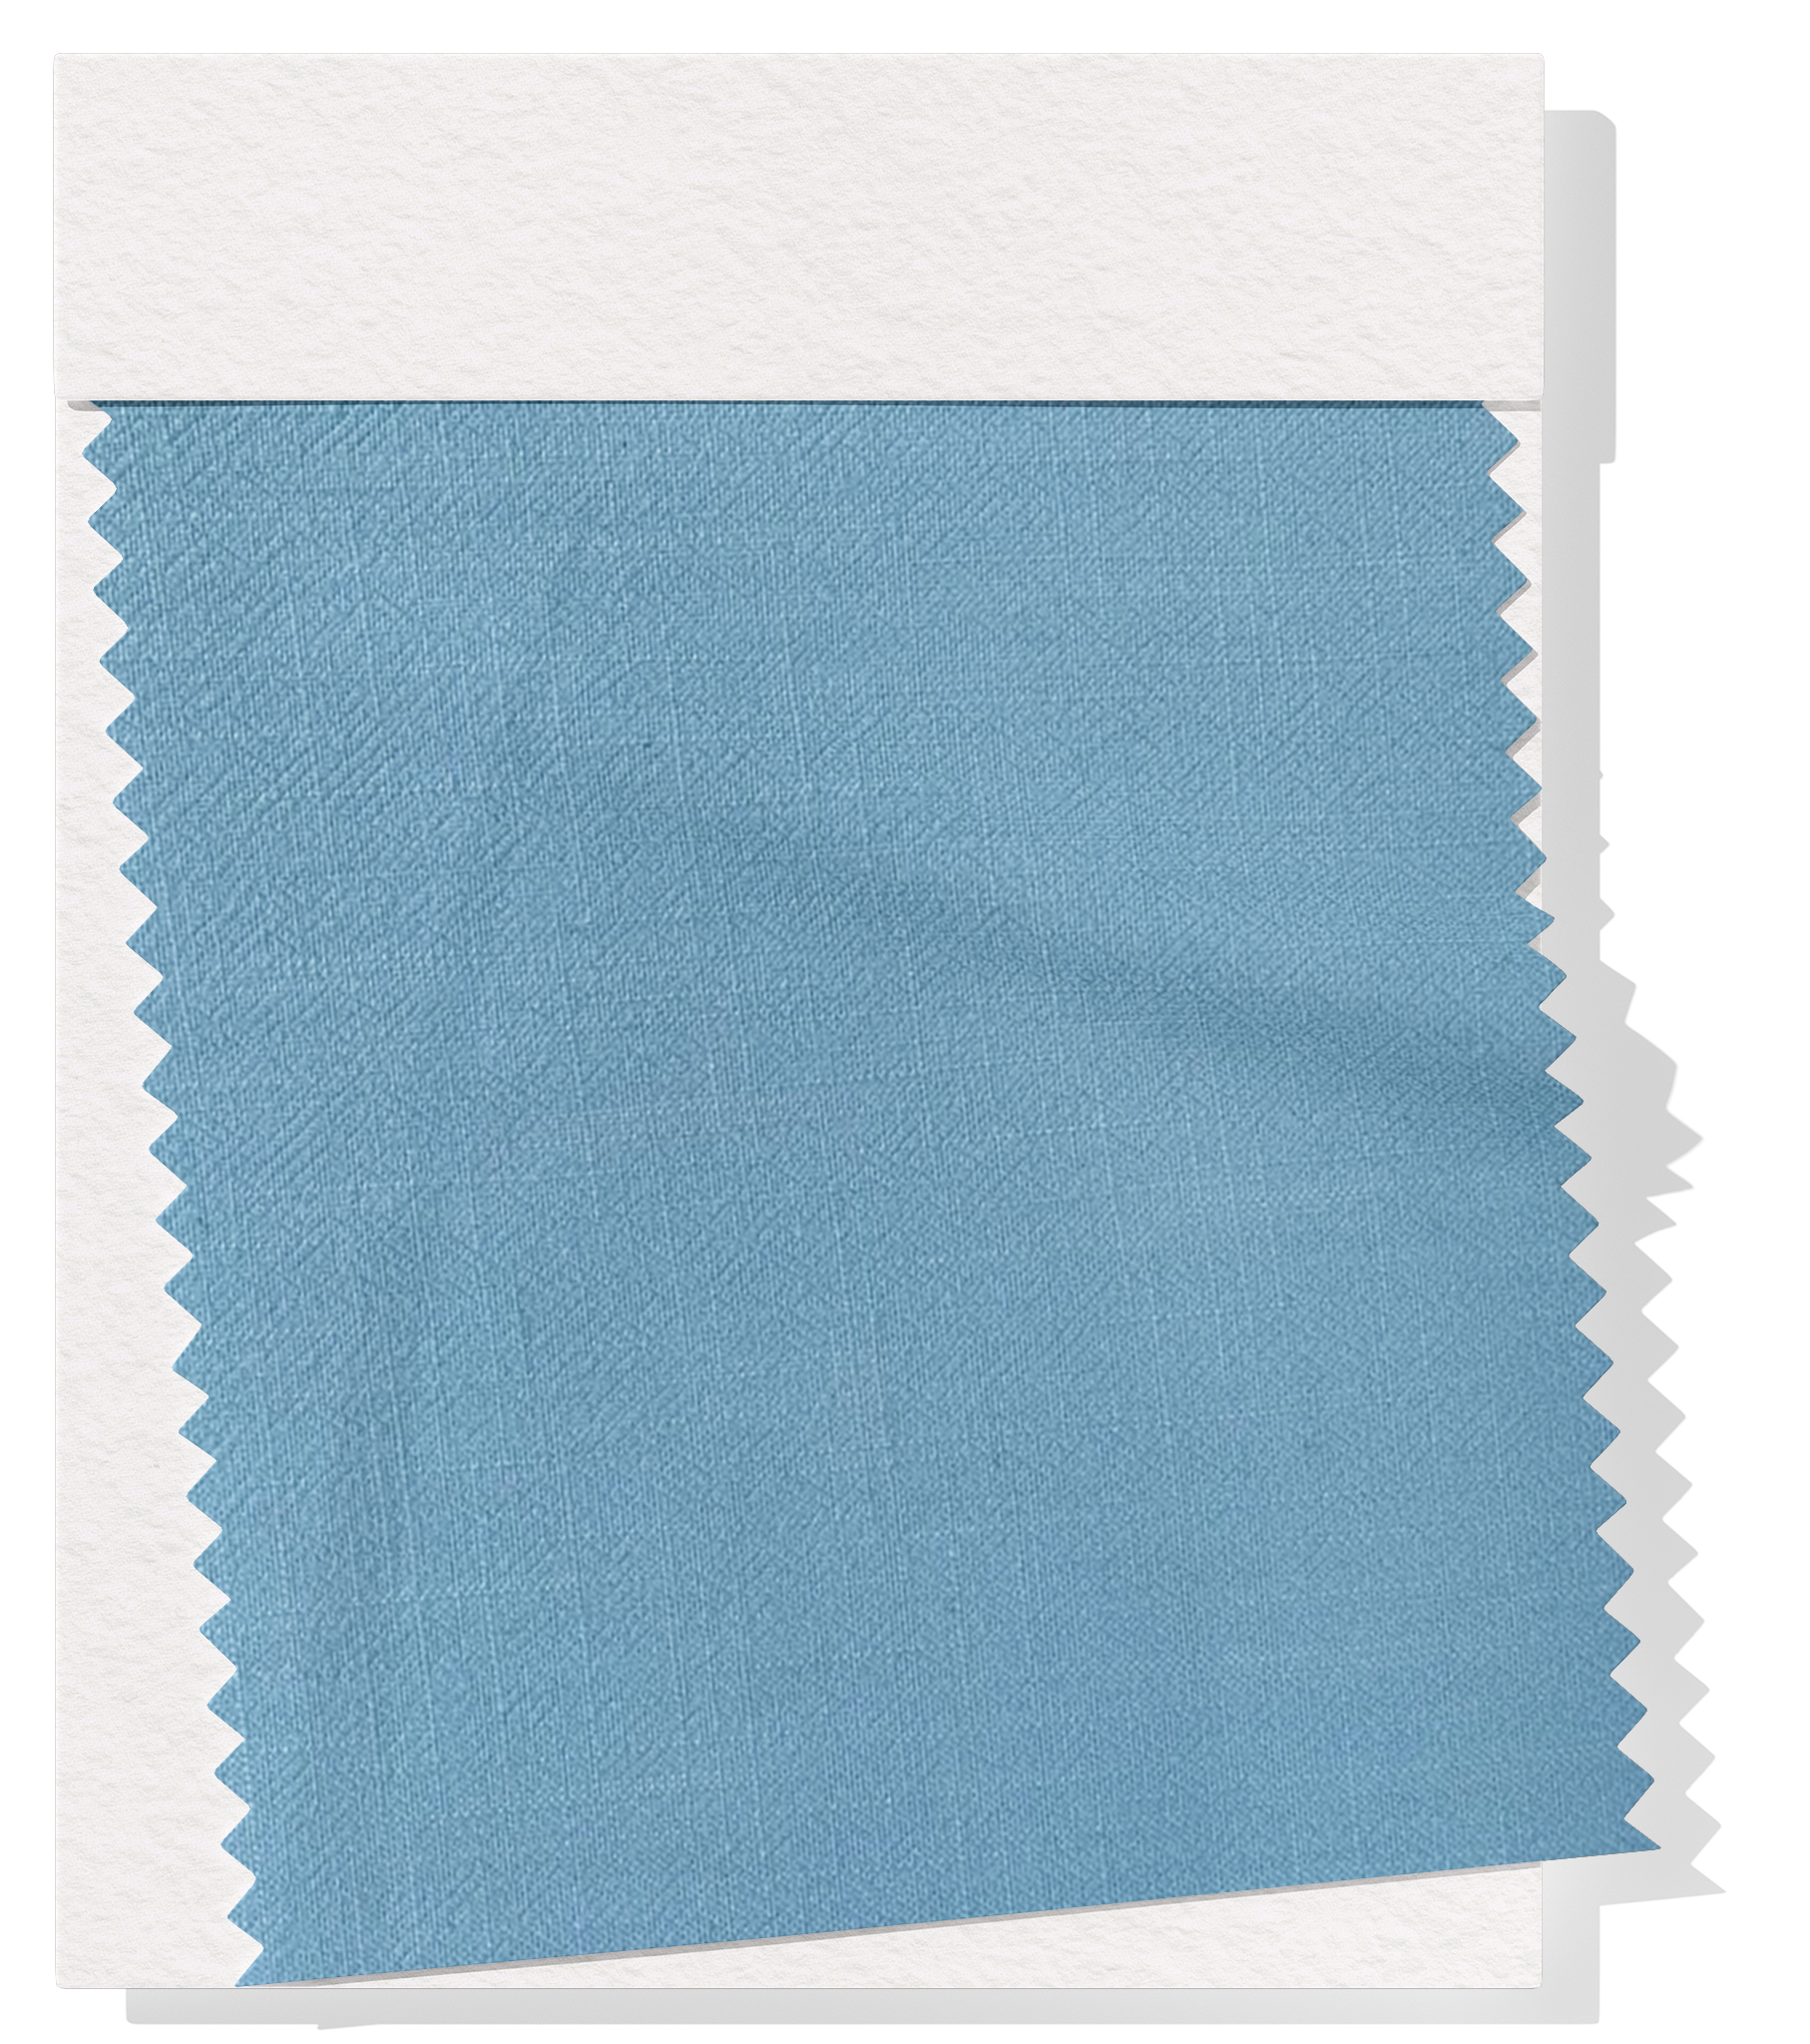 Linen / Ramie $14.00p/m -  Blue